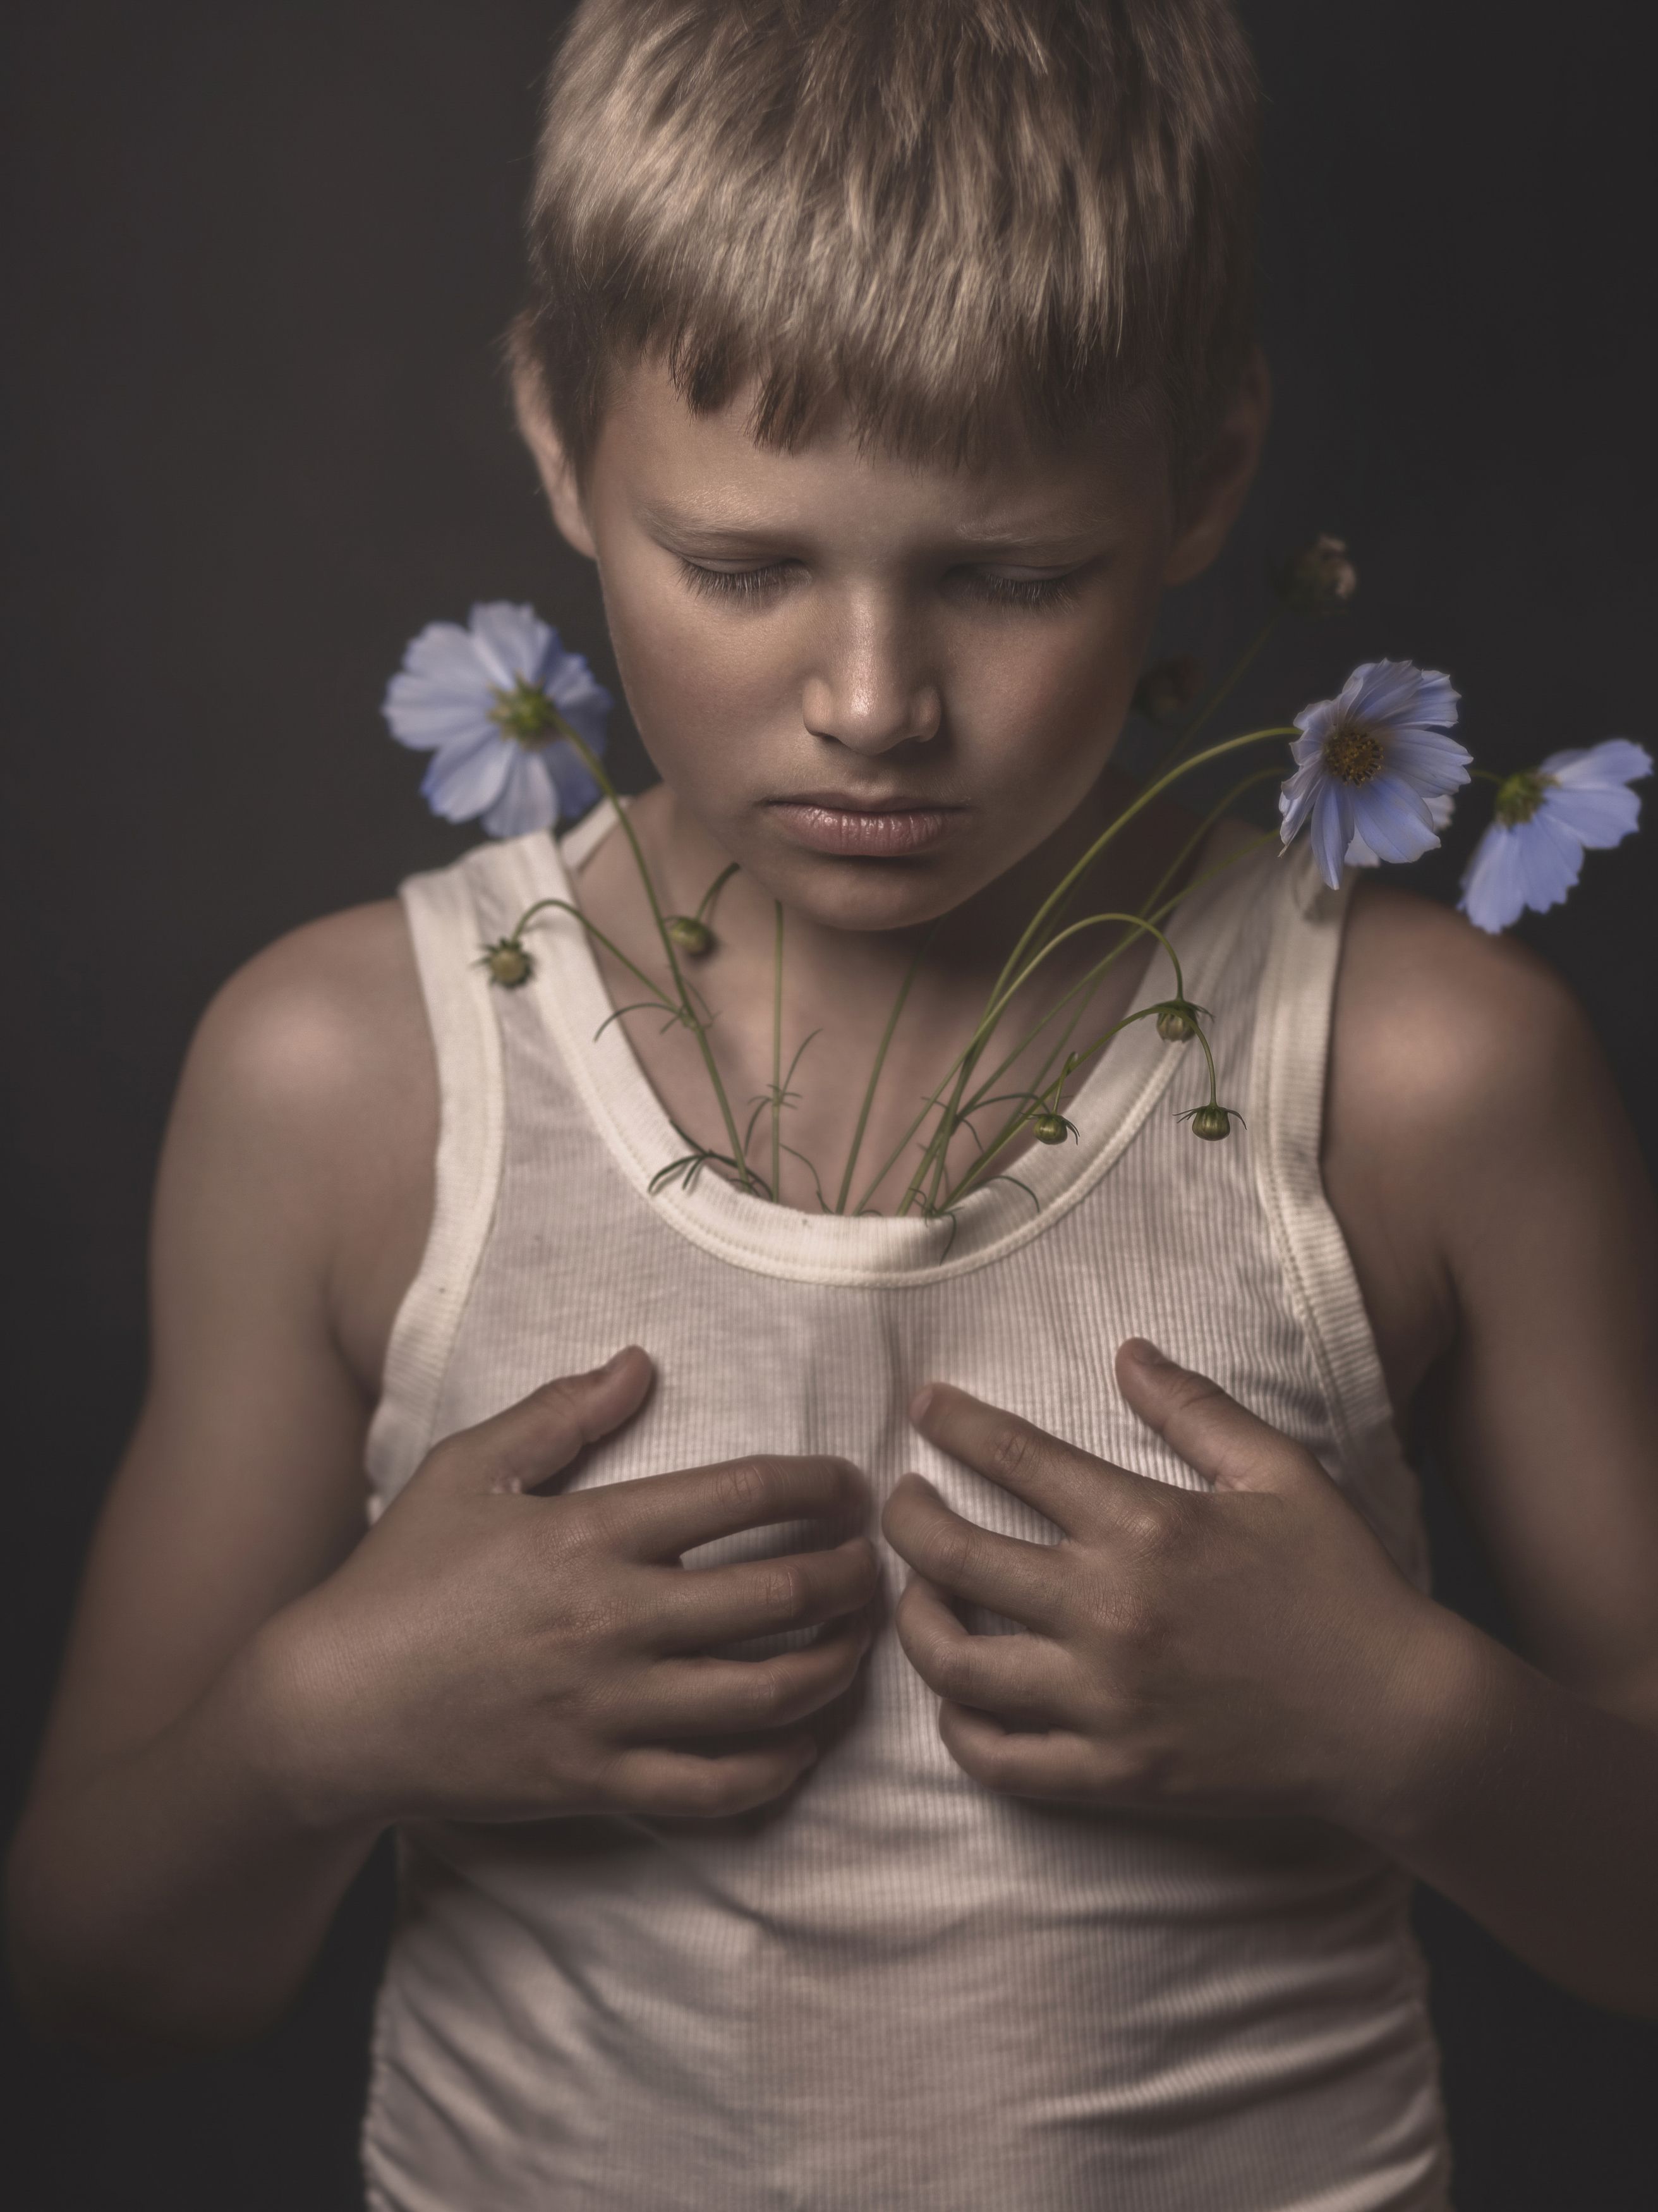 портрет, ребёнок, эмоции, цветы, child, portrait, emotions, flowers, Aleksey Sologubov